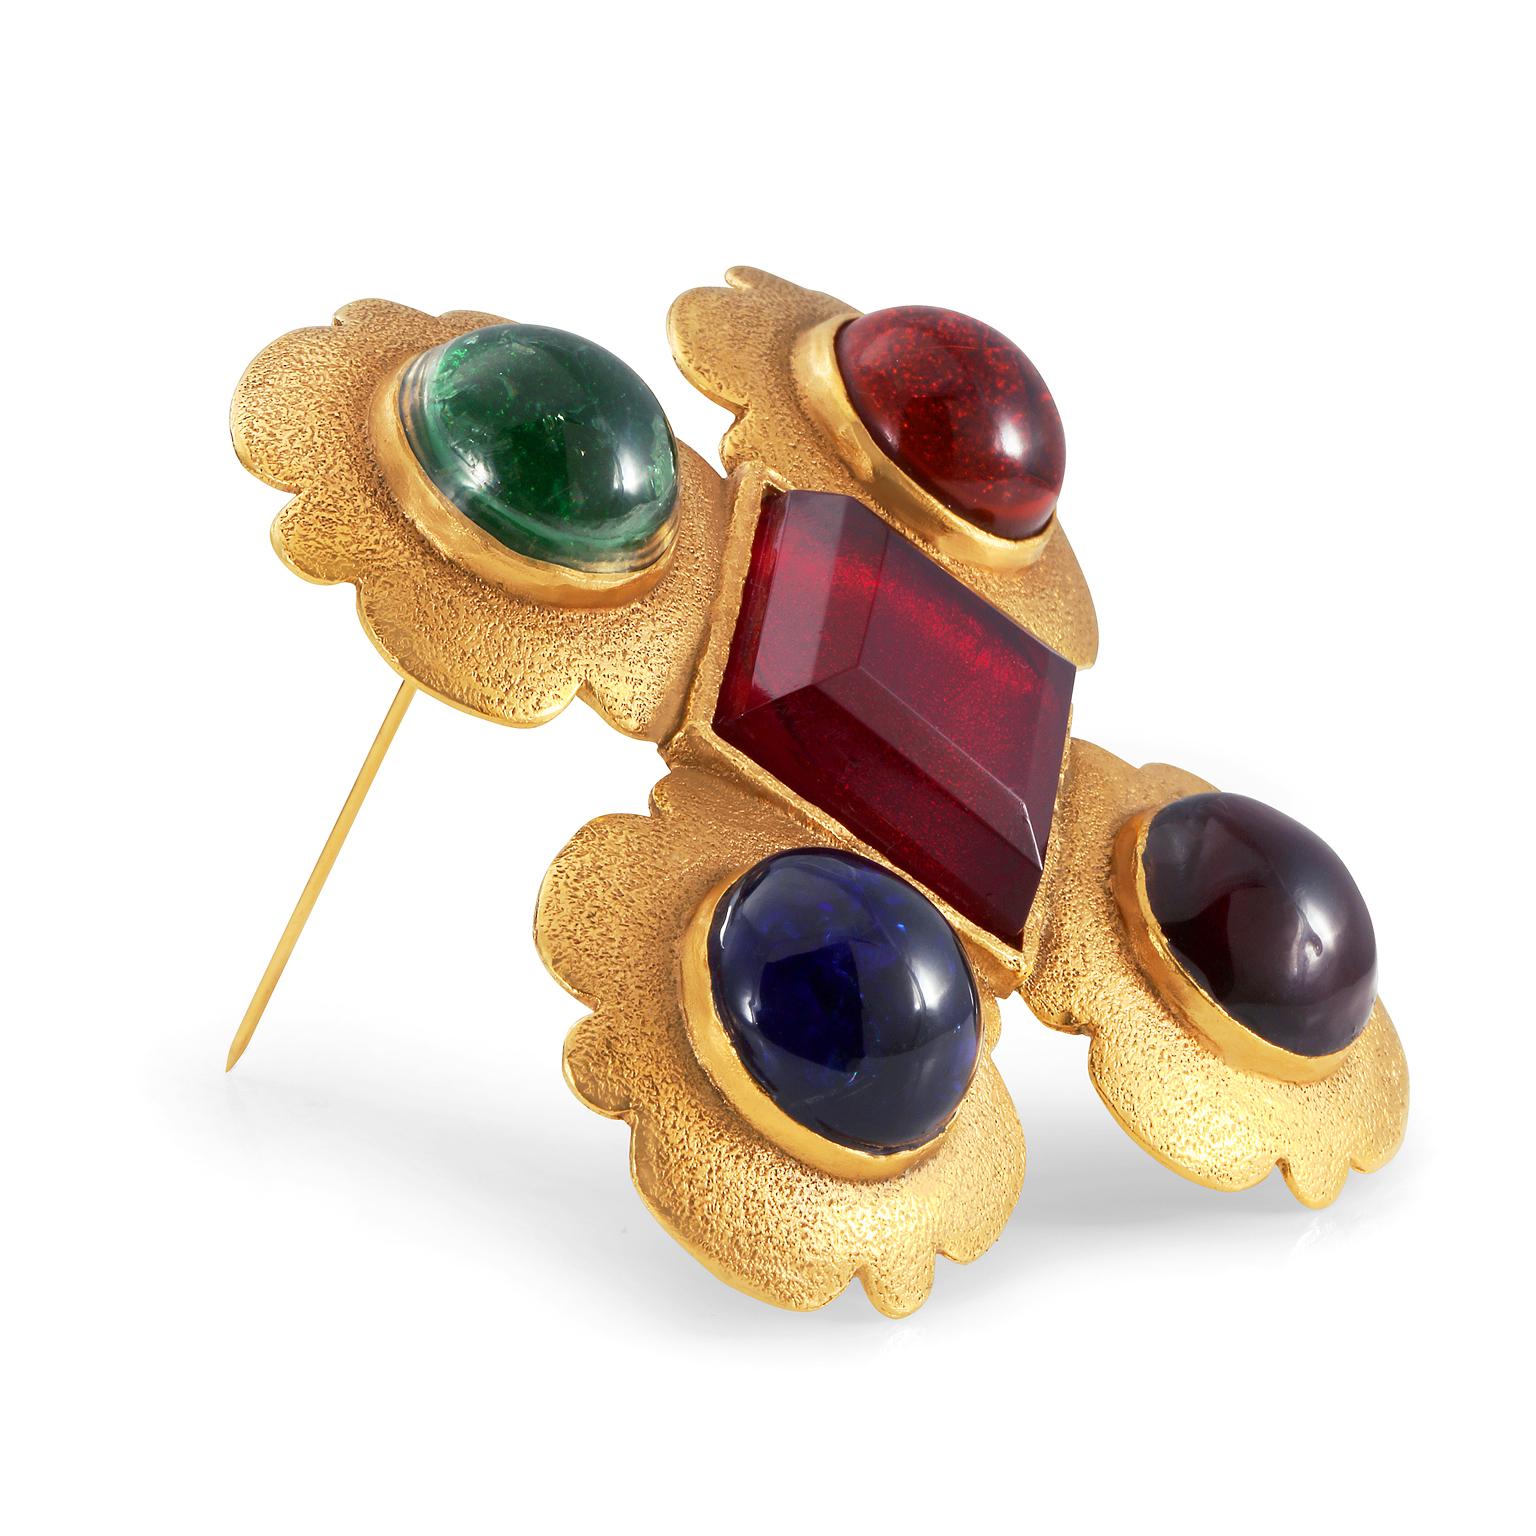 Diese authentische Chanel Multi Color Cabochon Gripoix Brosche ist in ausgezeichnetem Vintage-Zustand aus der Mitte bis Ende der 1980er Jahre.  Das Malteserkreuz aus gehämmertem Gold ist mit Gripoix-Glassteinen in Rot, Grün und Indigo geschmückt. 